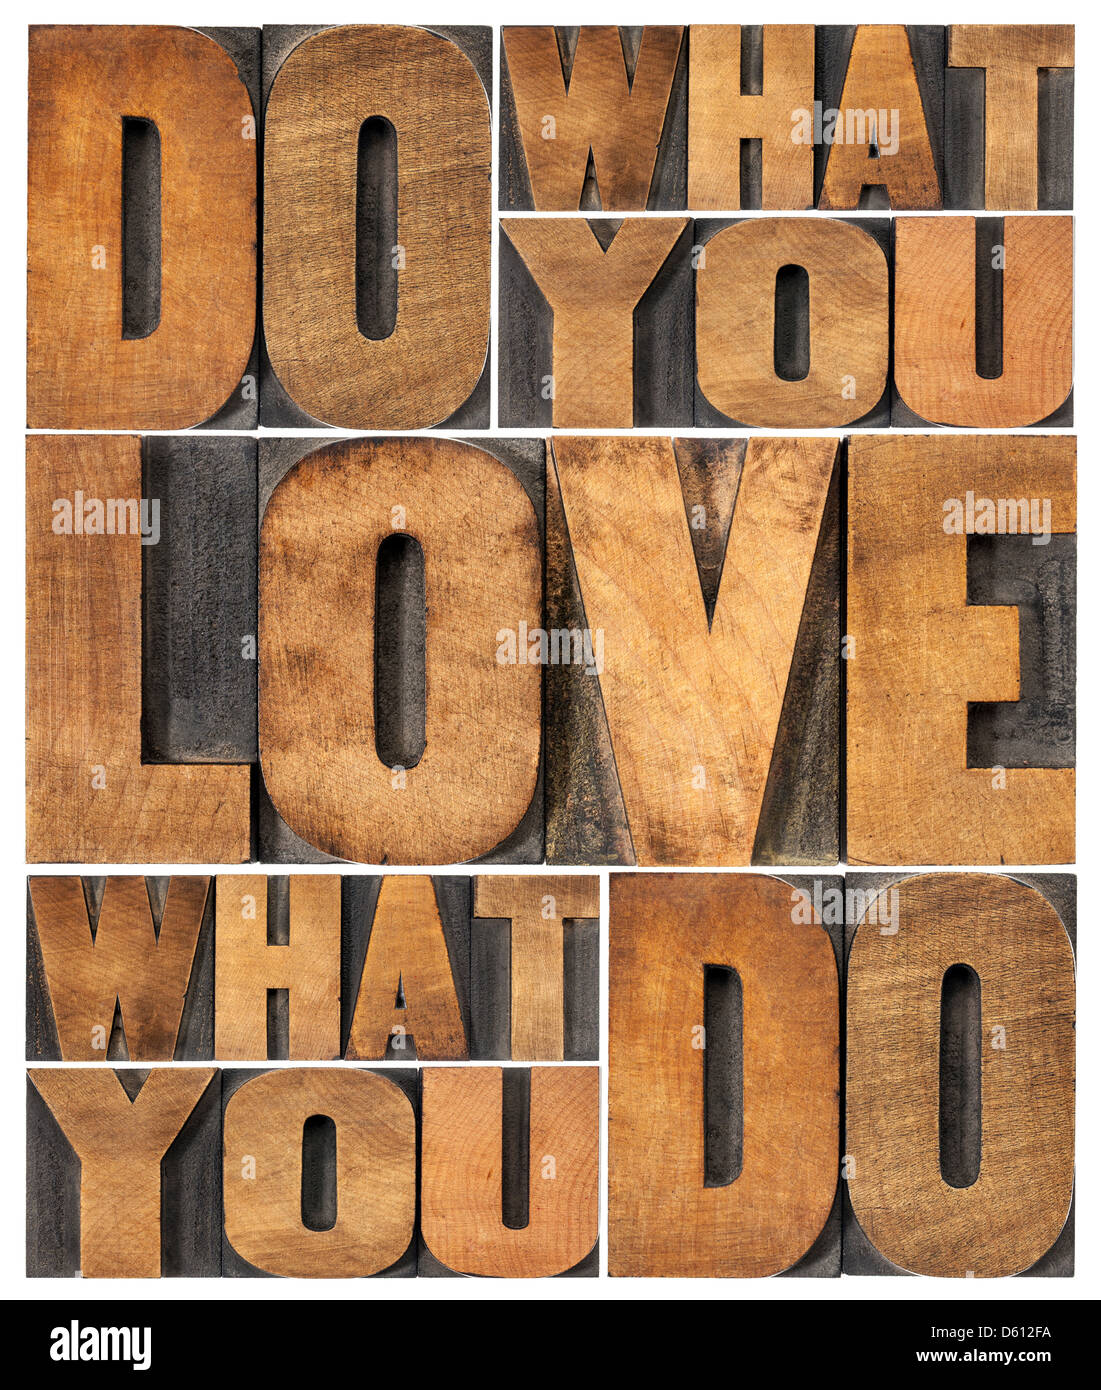 Faites ce que vous aimez, aimez ce que vous faites - mot de motivation résumé dans la typographie vintage type de blocs d'impression Banque D'Images